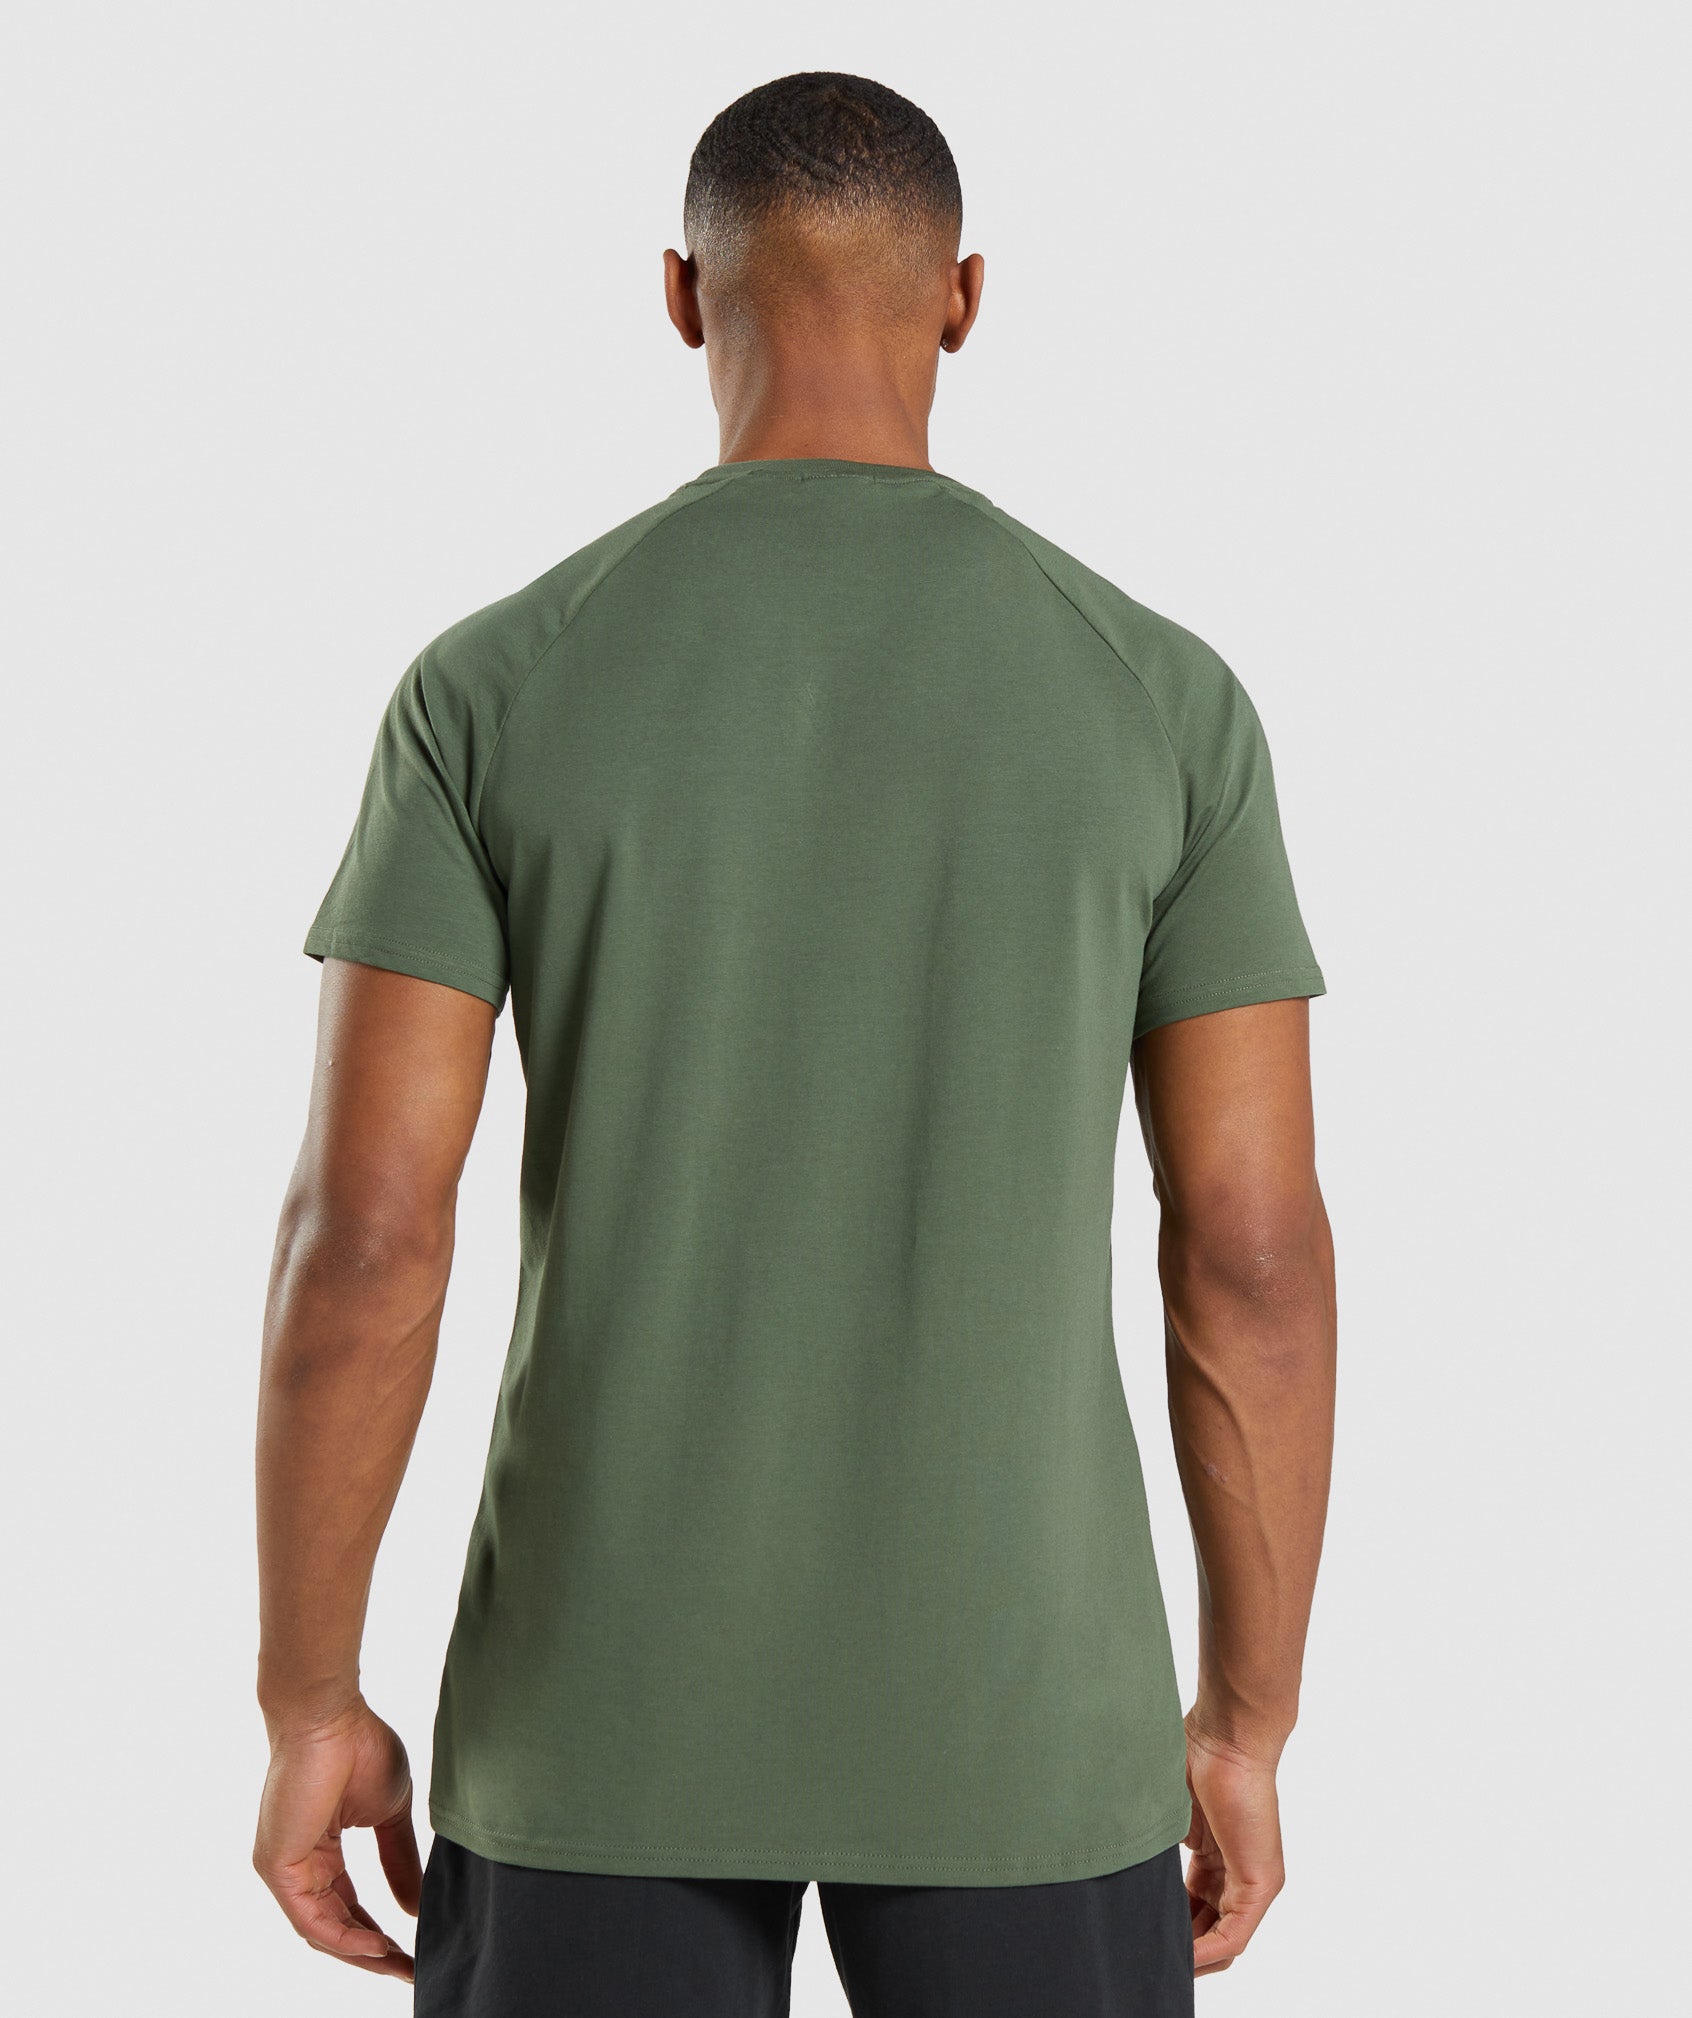 Apollo Camo T-Shirt in Camo Green